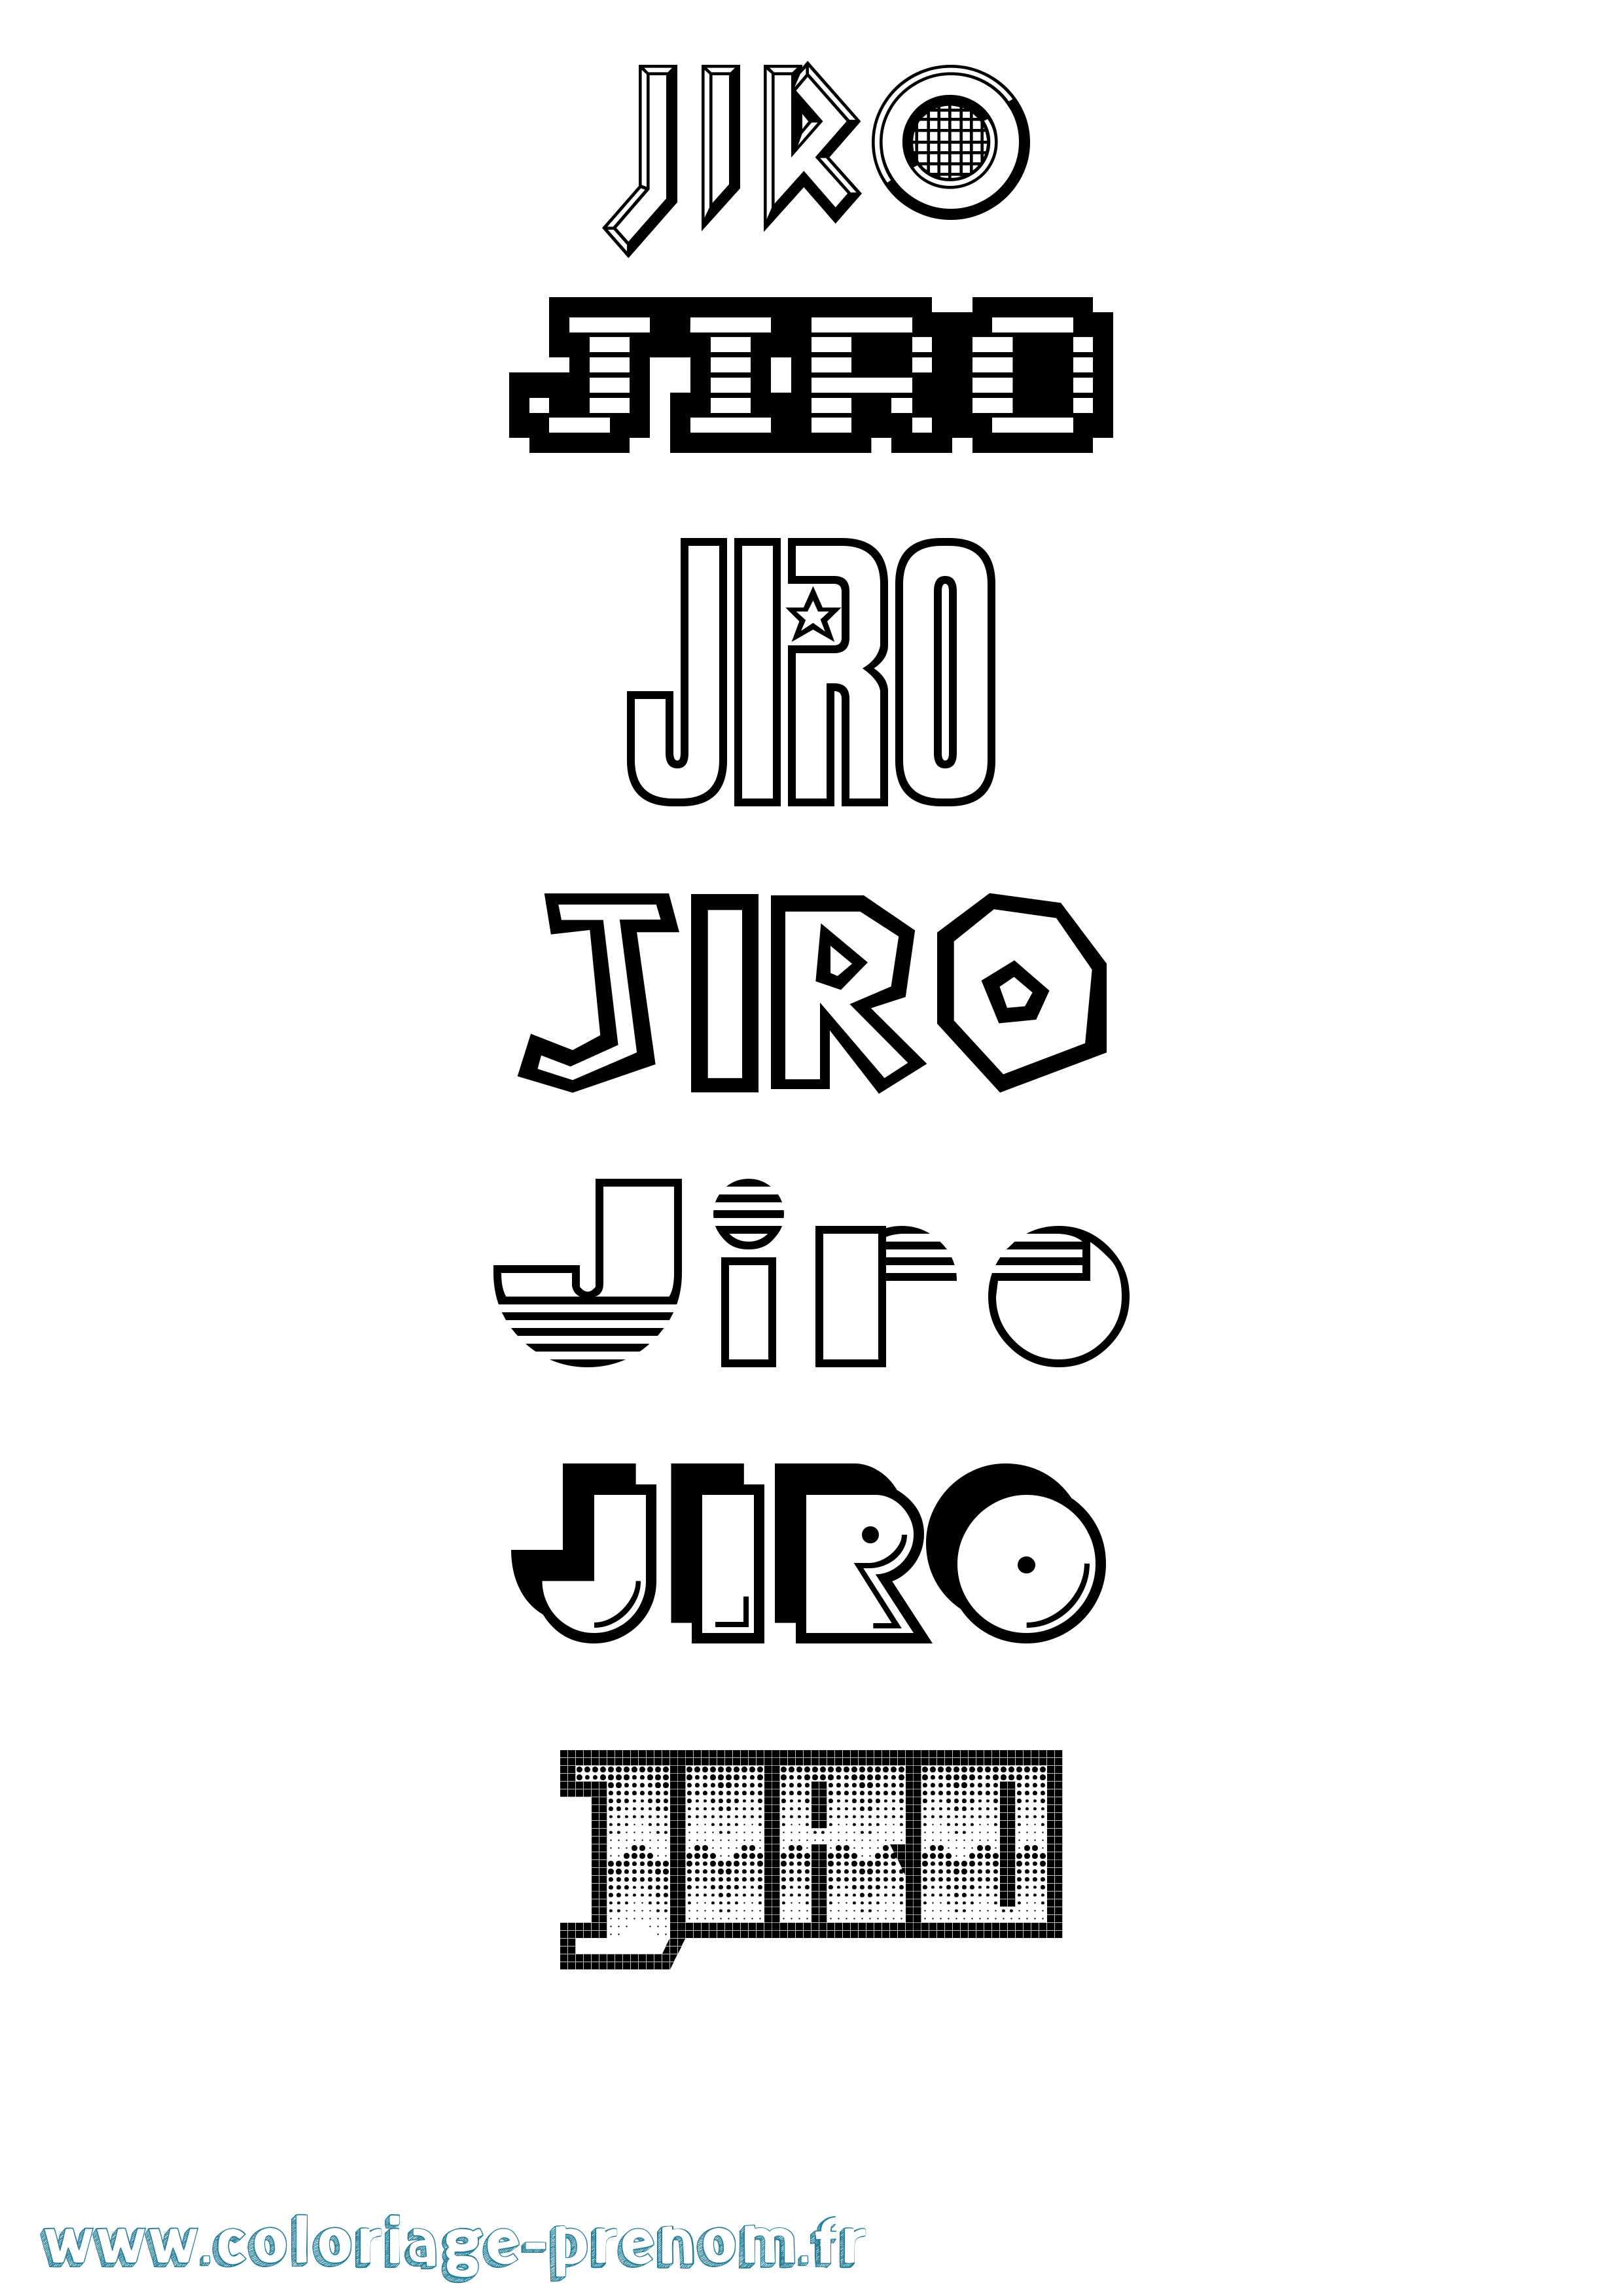 Coloriage prénom Jiro Jeux Vidéos